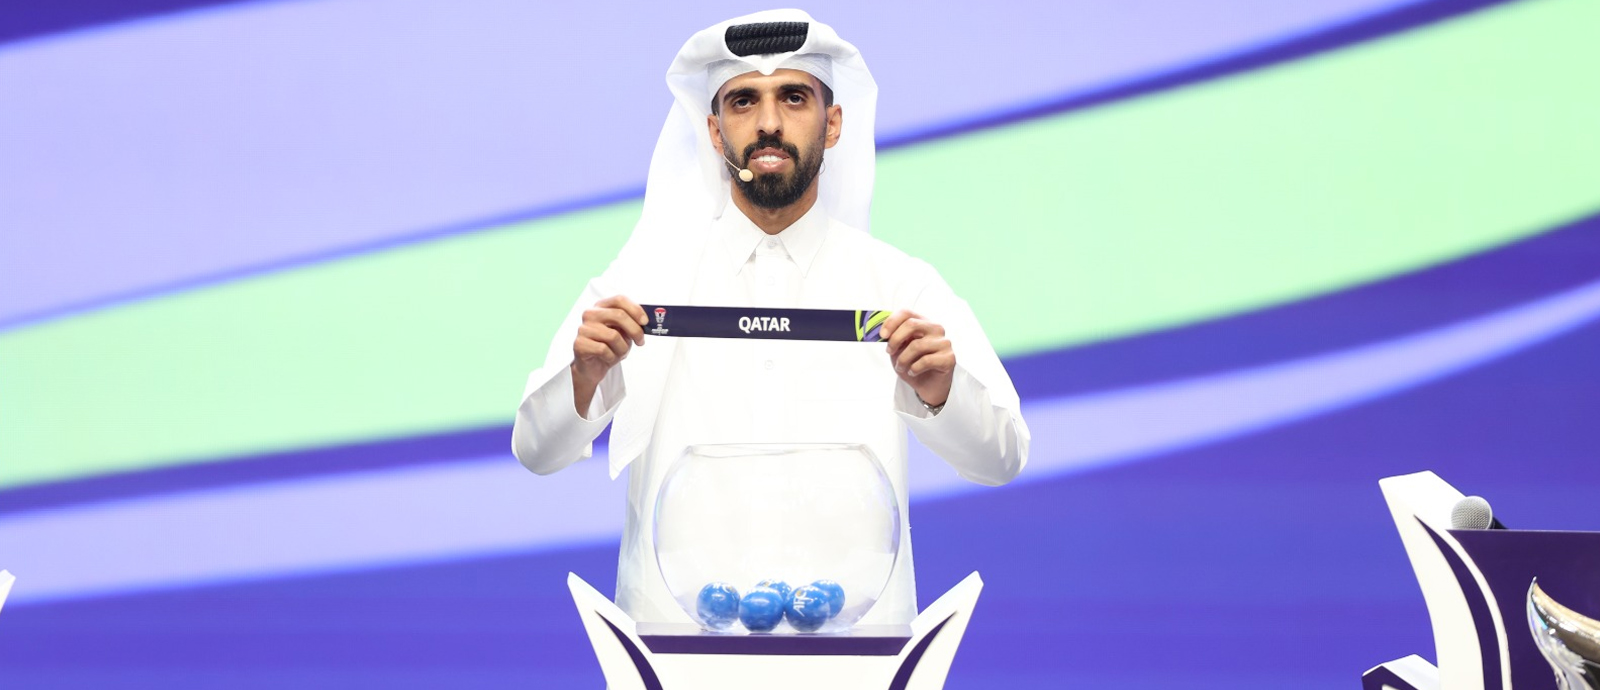  قرعة النسخة الـ 18 من كأس آسيا قطر 2023 لكرة القدم